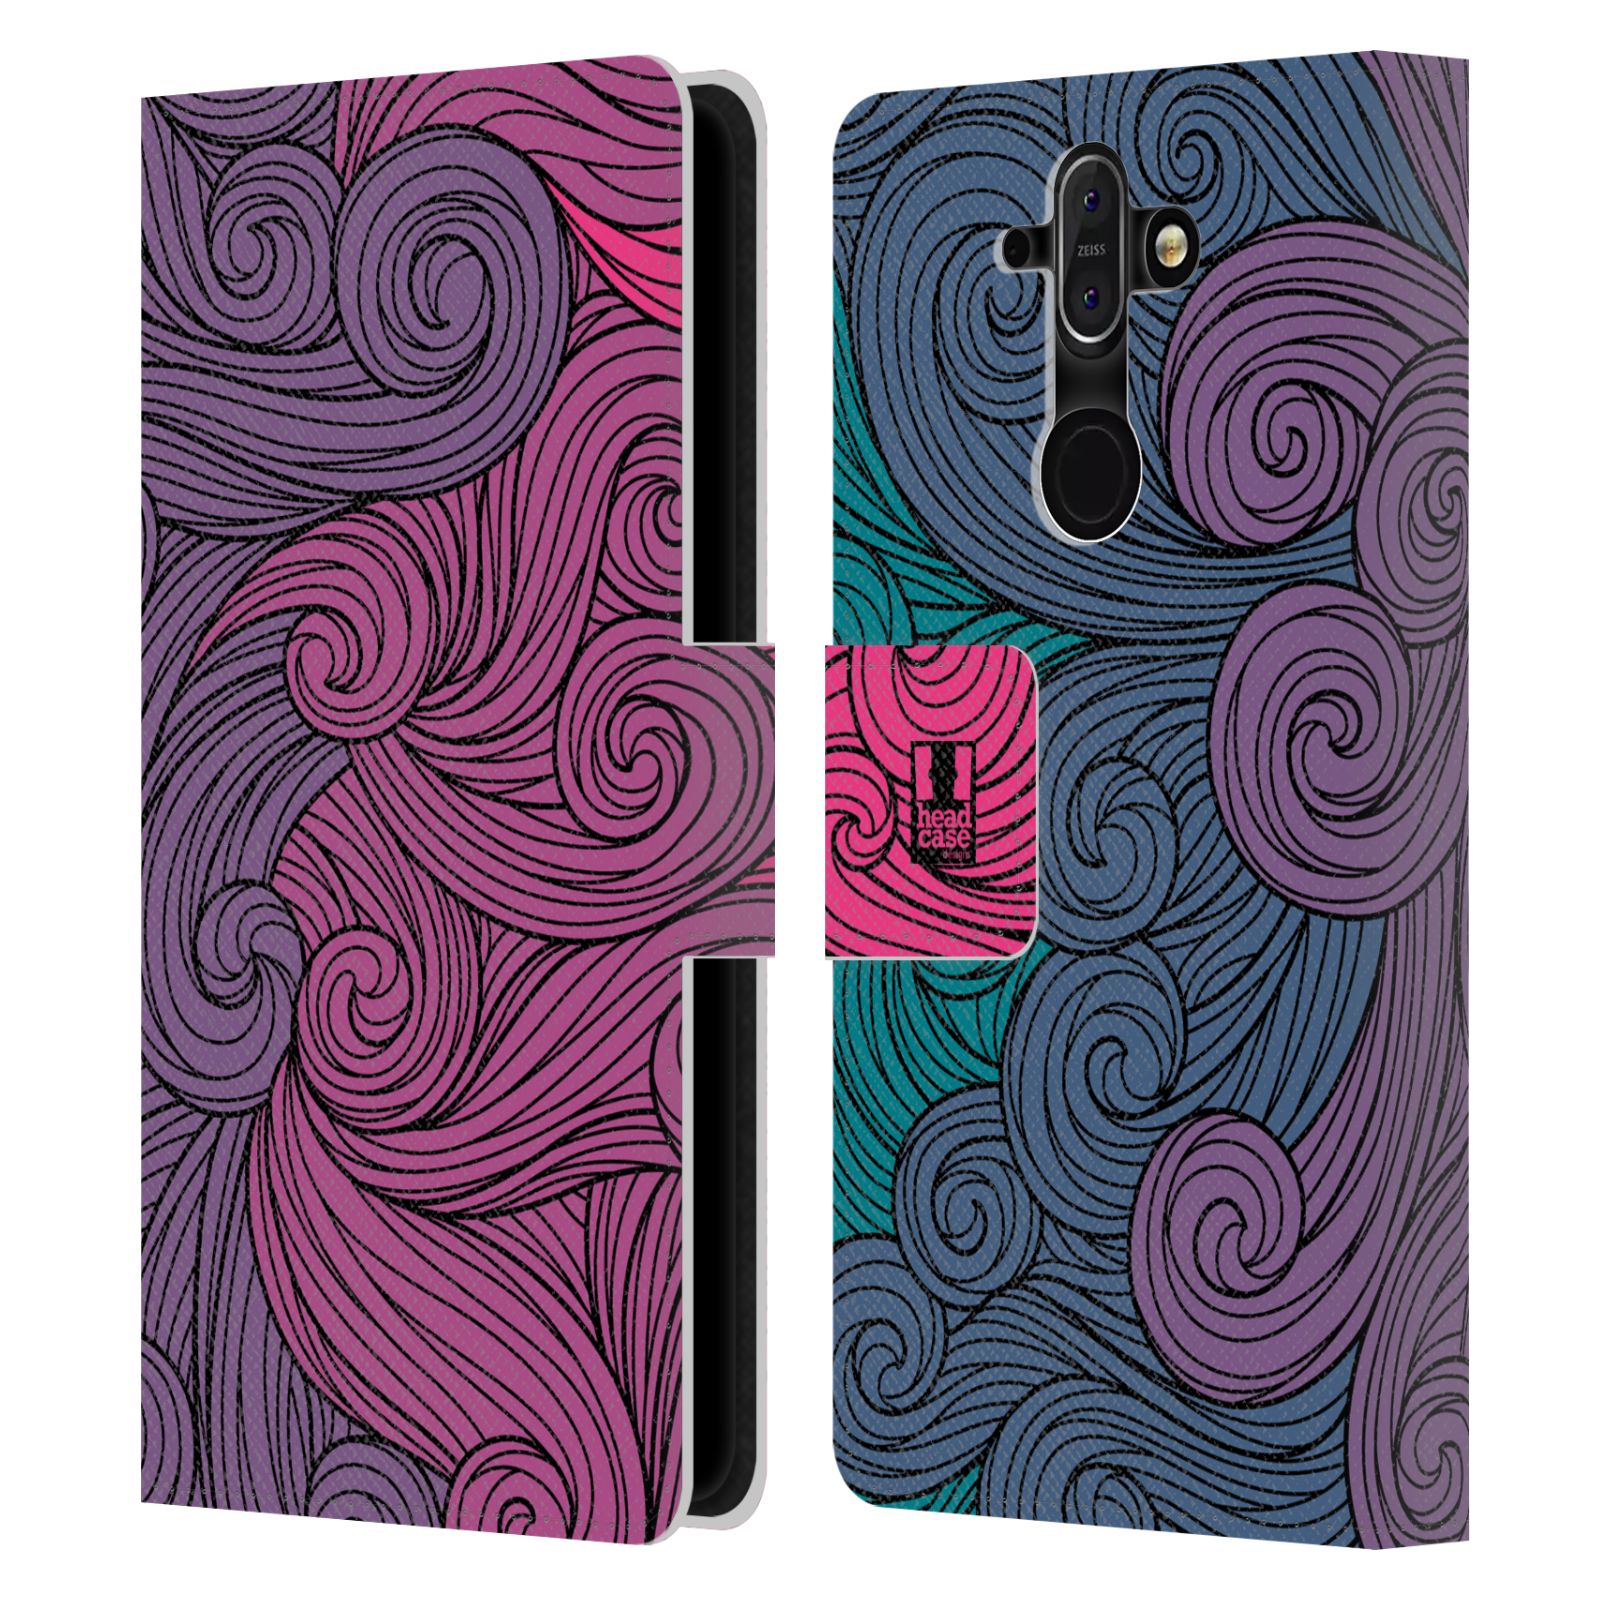 HEAD CASE Flipové pouzdro pro mobil Nokia 8 SIROCCO barevné vlny růžová a modrá